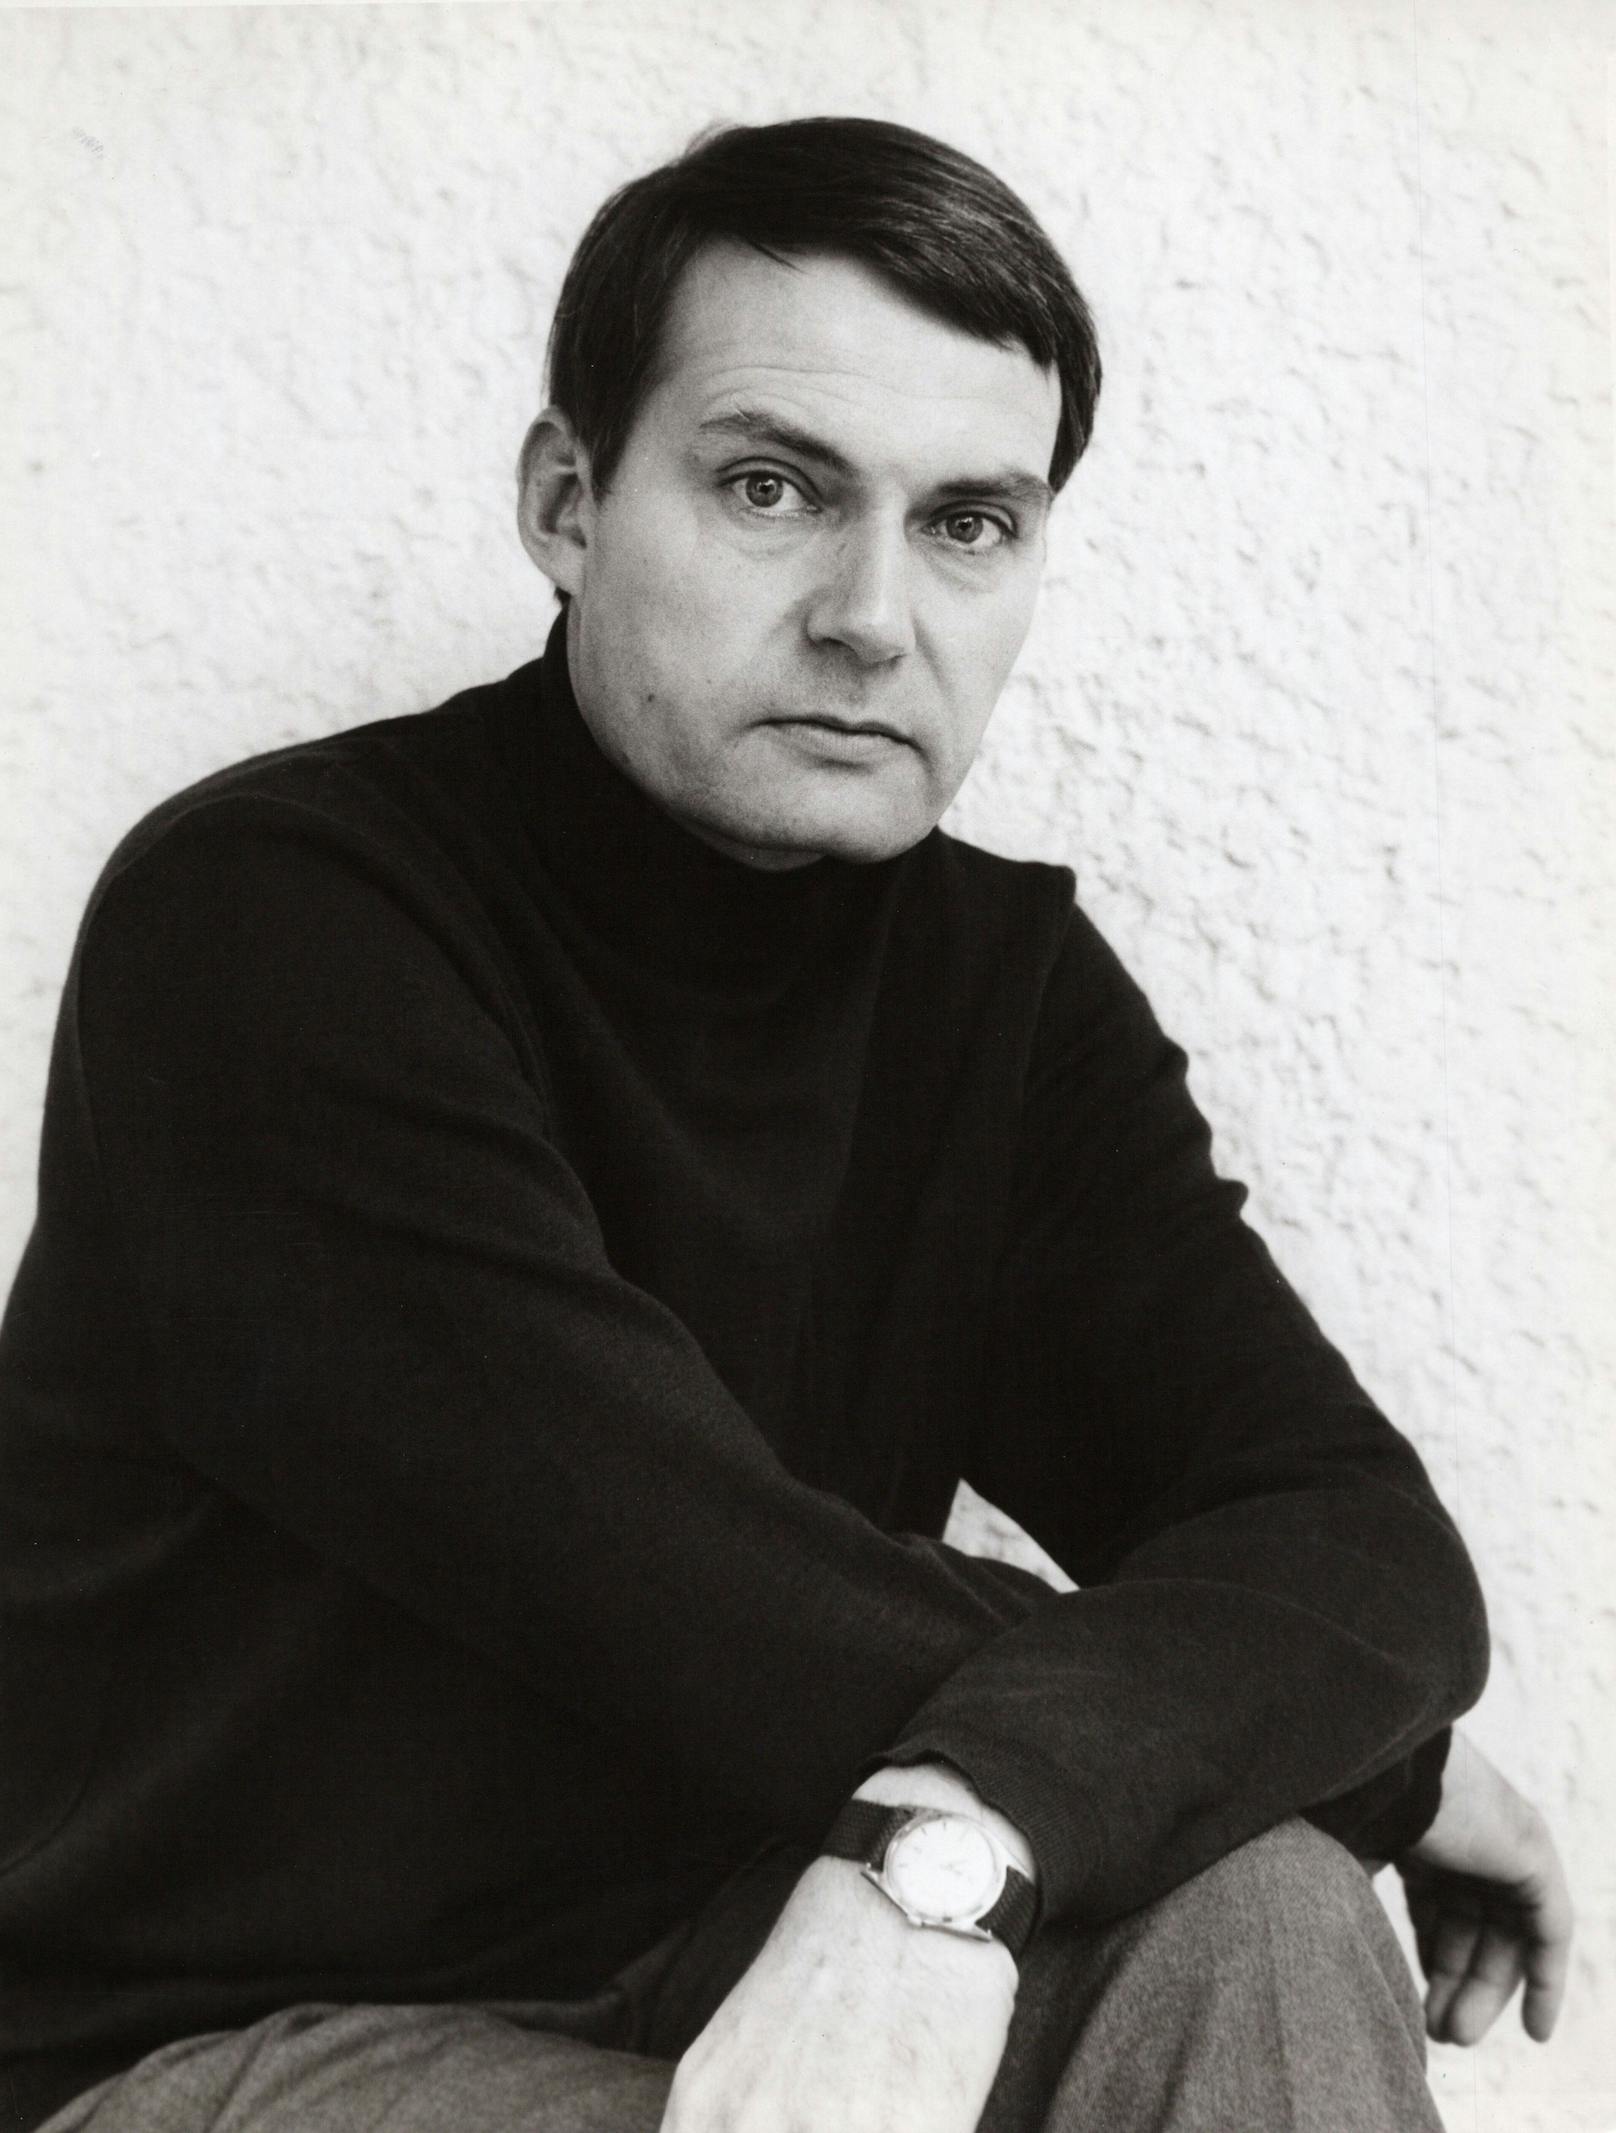 Lothar Blumhagen, deutscher Schauspieler und Synchronsprecher, ist tot. Archivbild aus 1967.